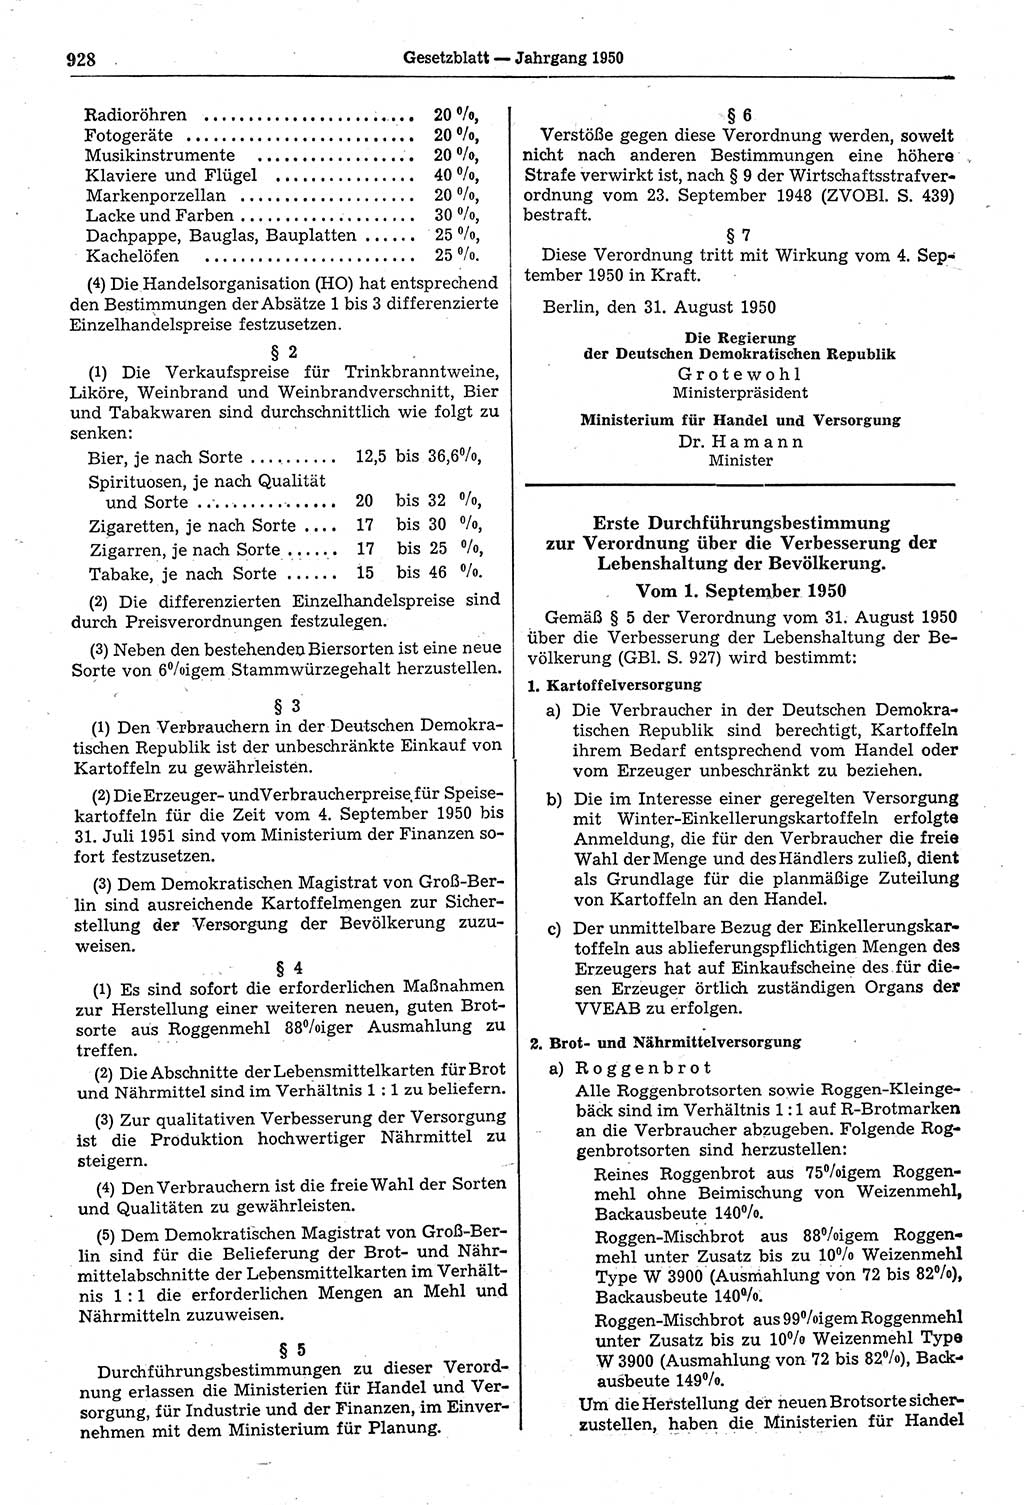 Gesetzblatt (GBl.) der Deutschen Demokratischen Republik (DDR) 1950, Seite 928 (GBl. DDR 1950, S. 928)